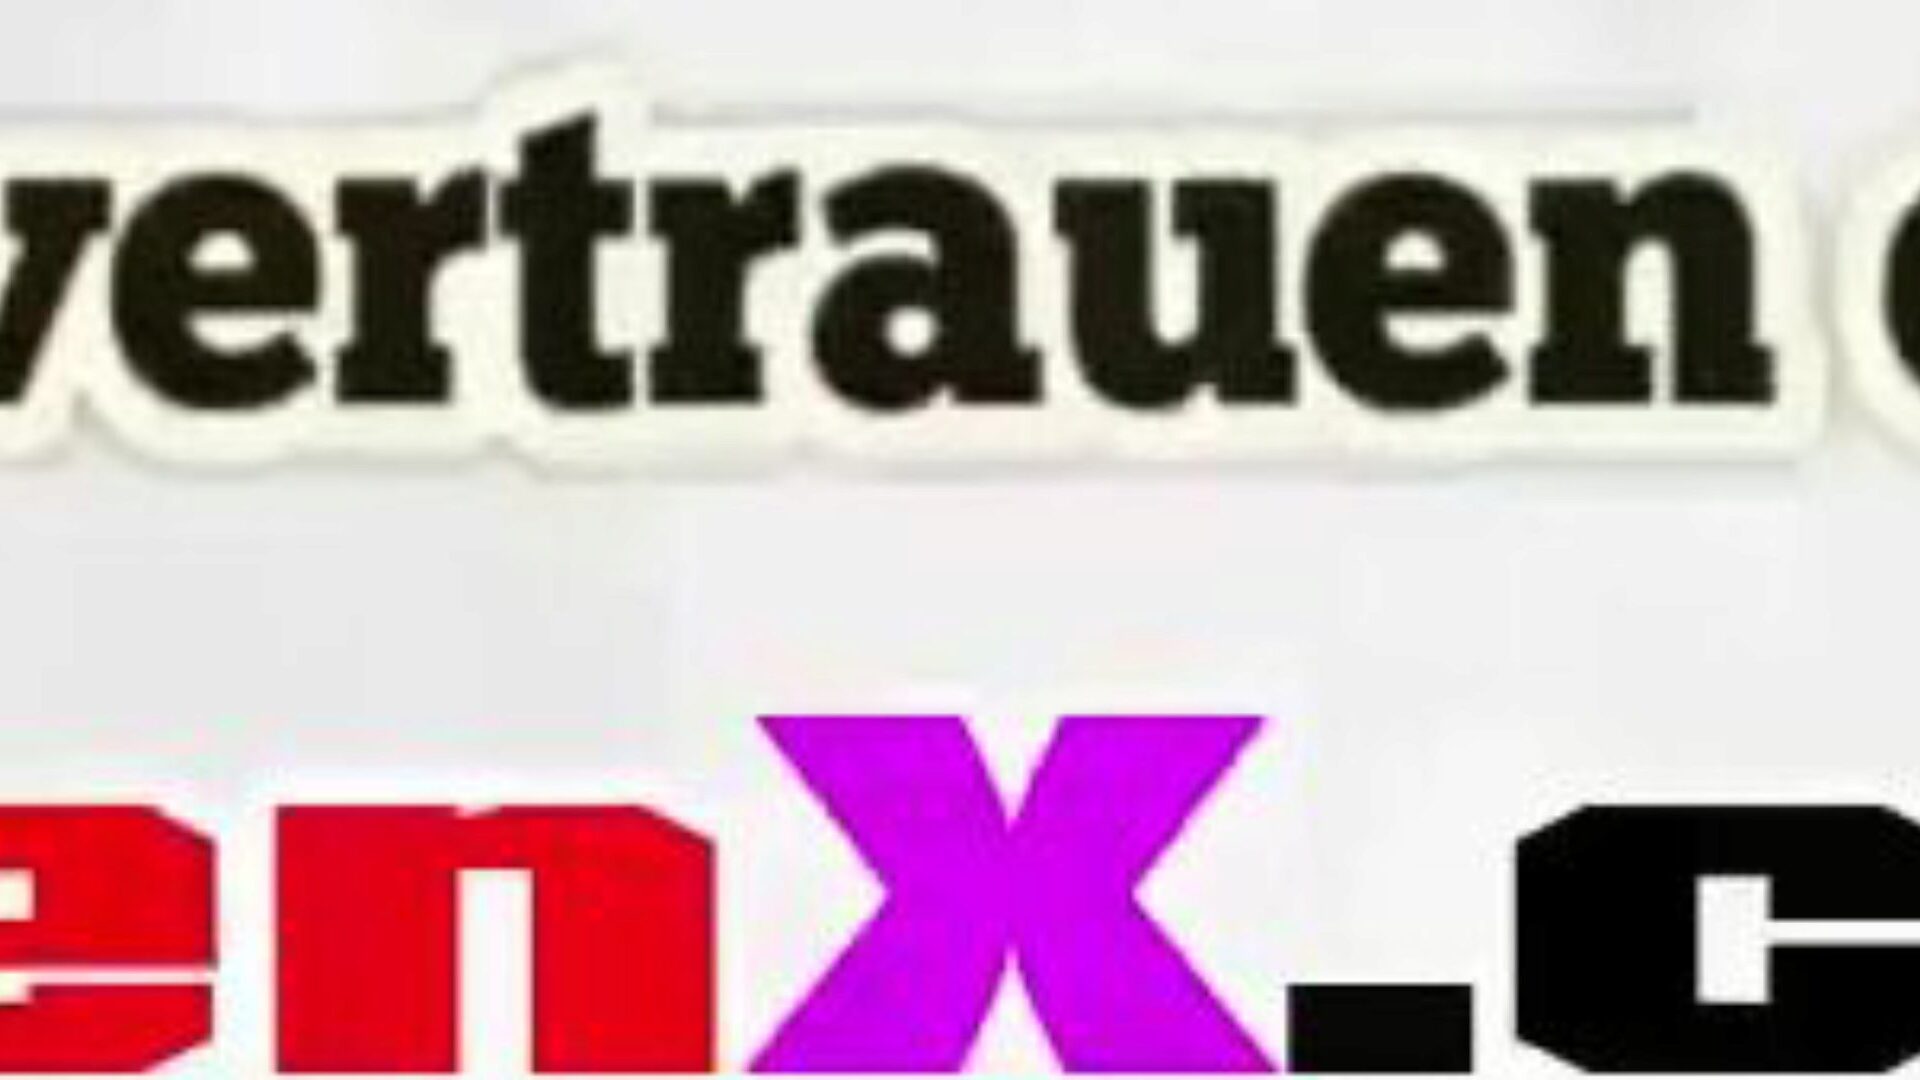 stiefmutter gefickt: gratuit mutter allemand vidéo porno hd f5 regarder stiefmutter gefickt tube fuckfest vidéo pour free-for-all sur xhamster, avec l'étonnante collection d'épisodes de scènes de films pornographiques allemands et murmurants allemands